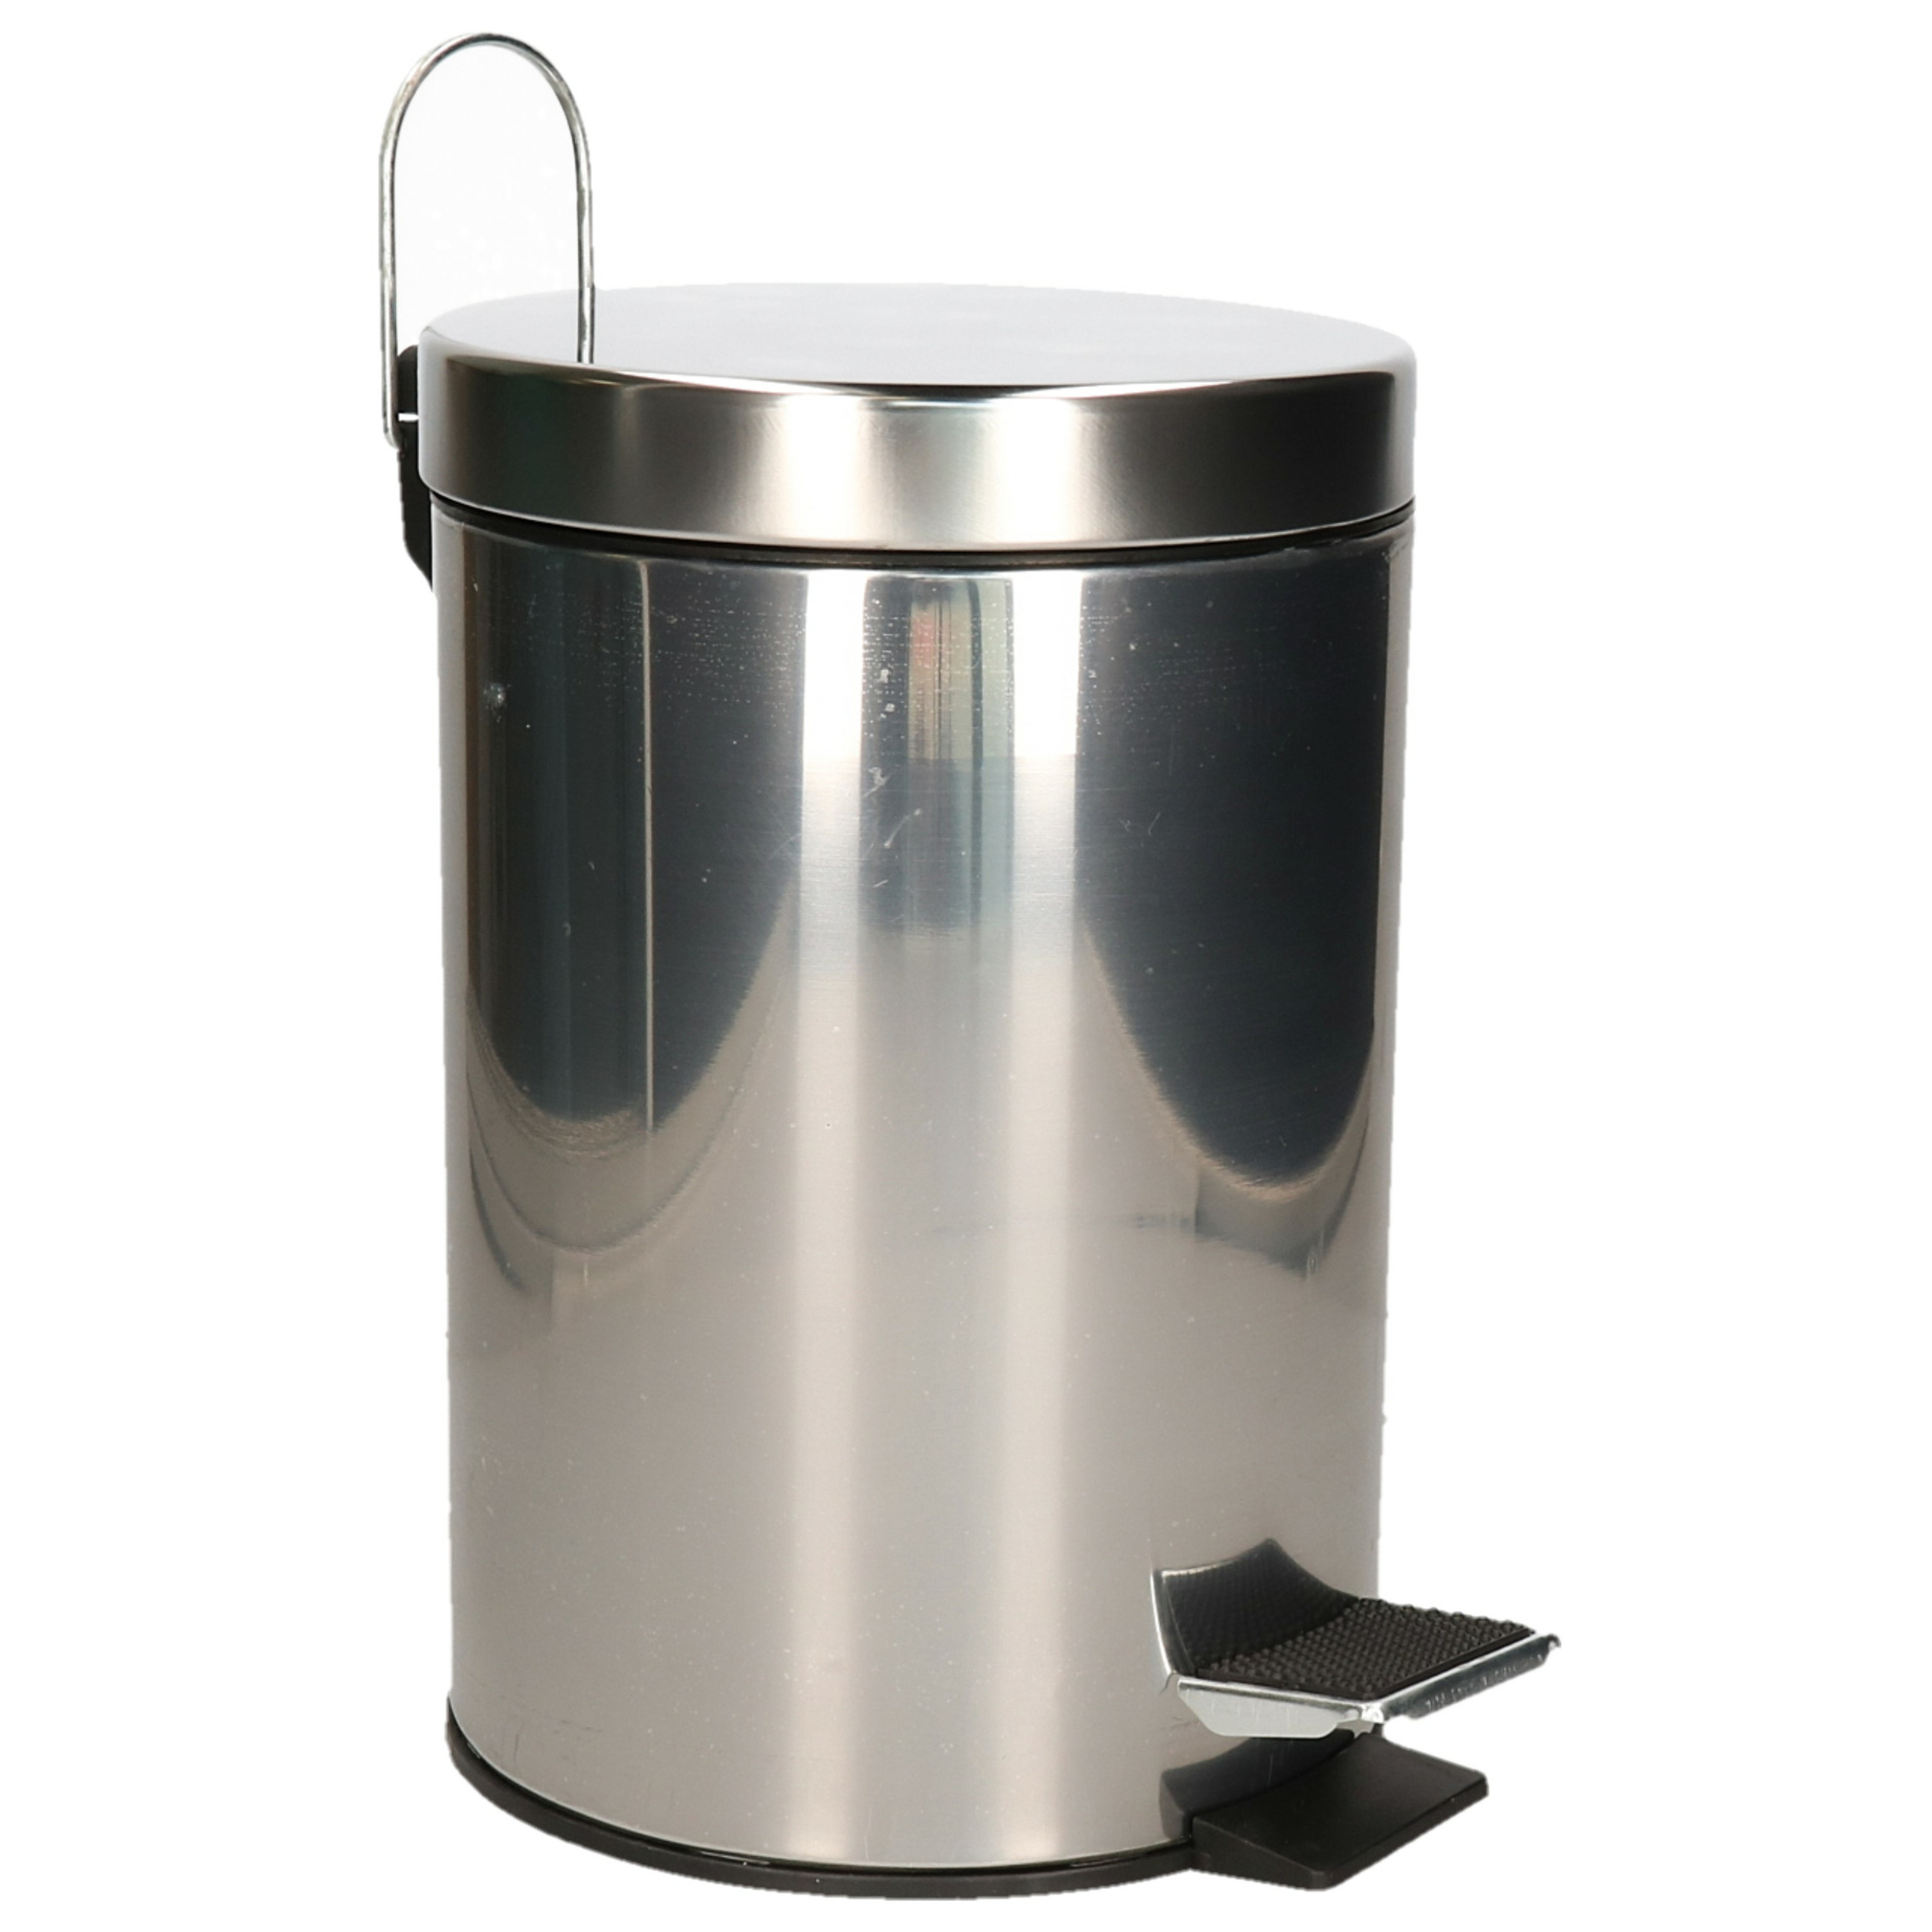 Pedaalemmer-prullenbak-vuilnisbak 3 liter zilver RVS 17 x 25 cm